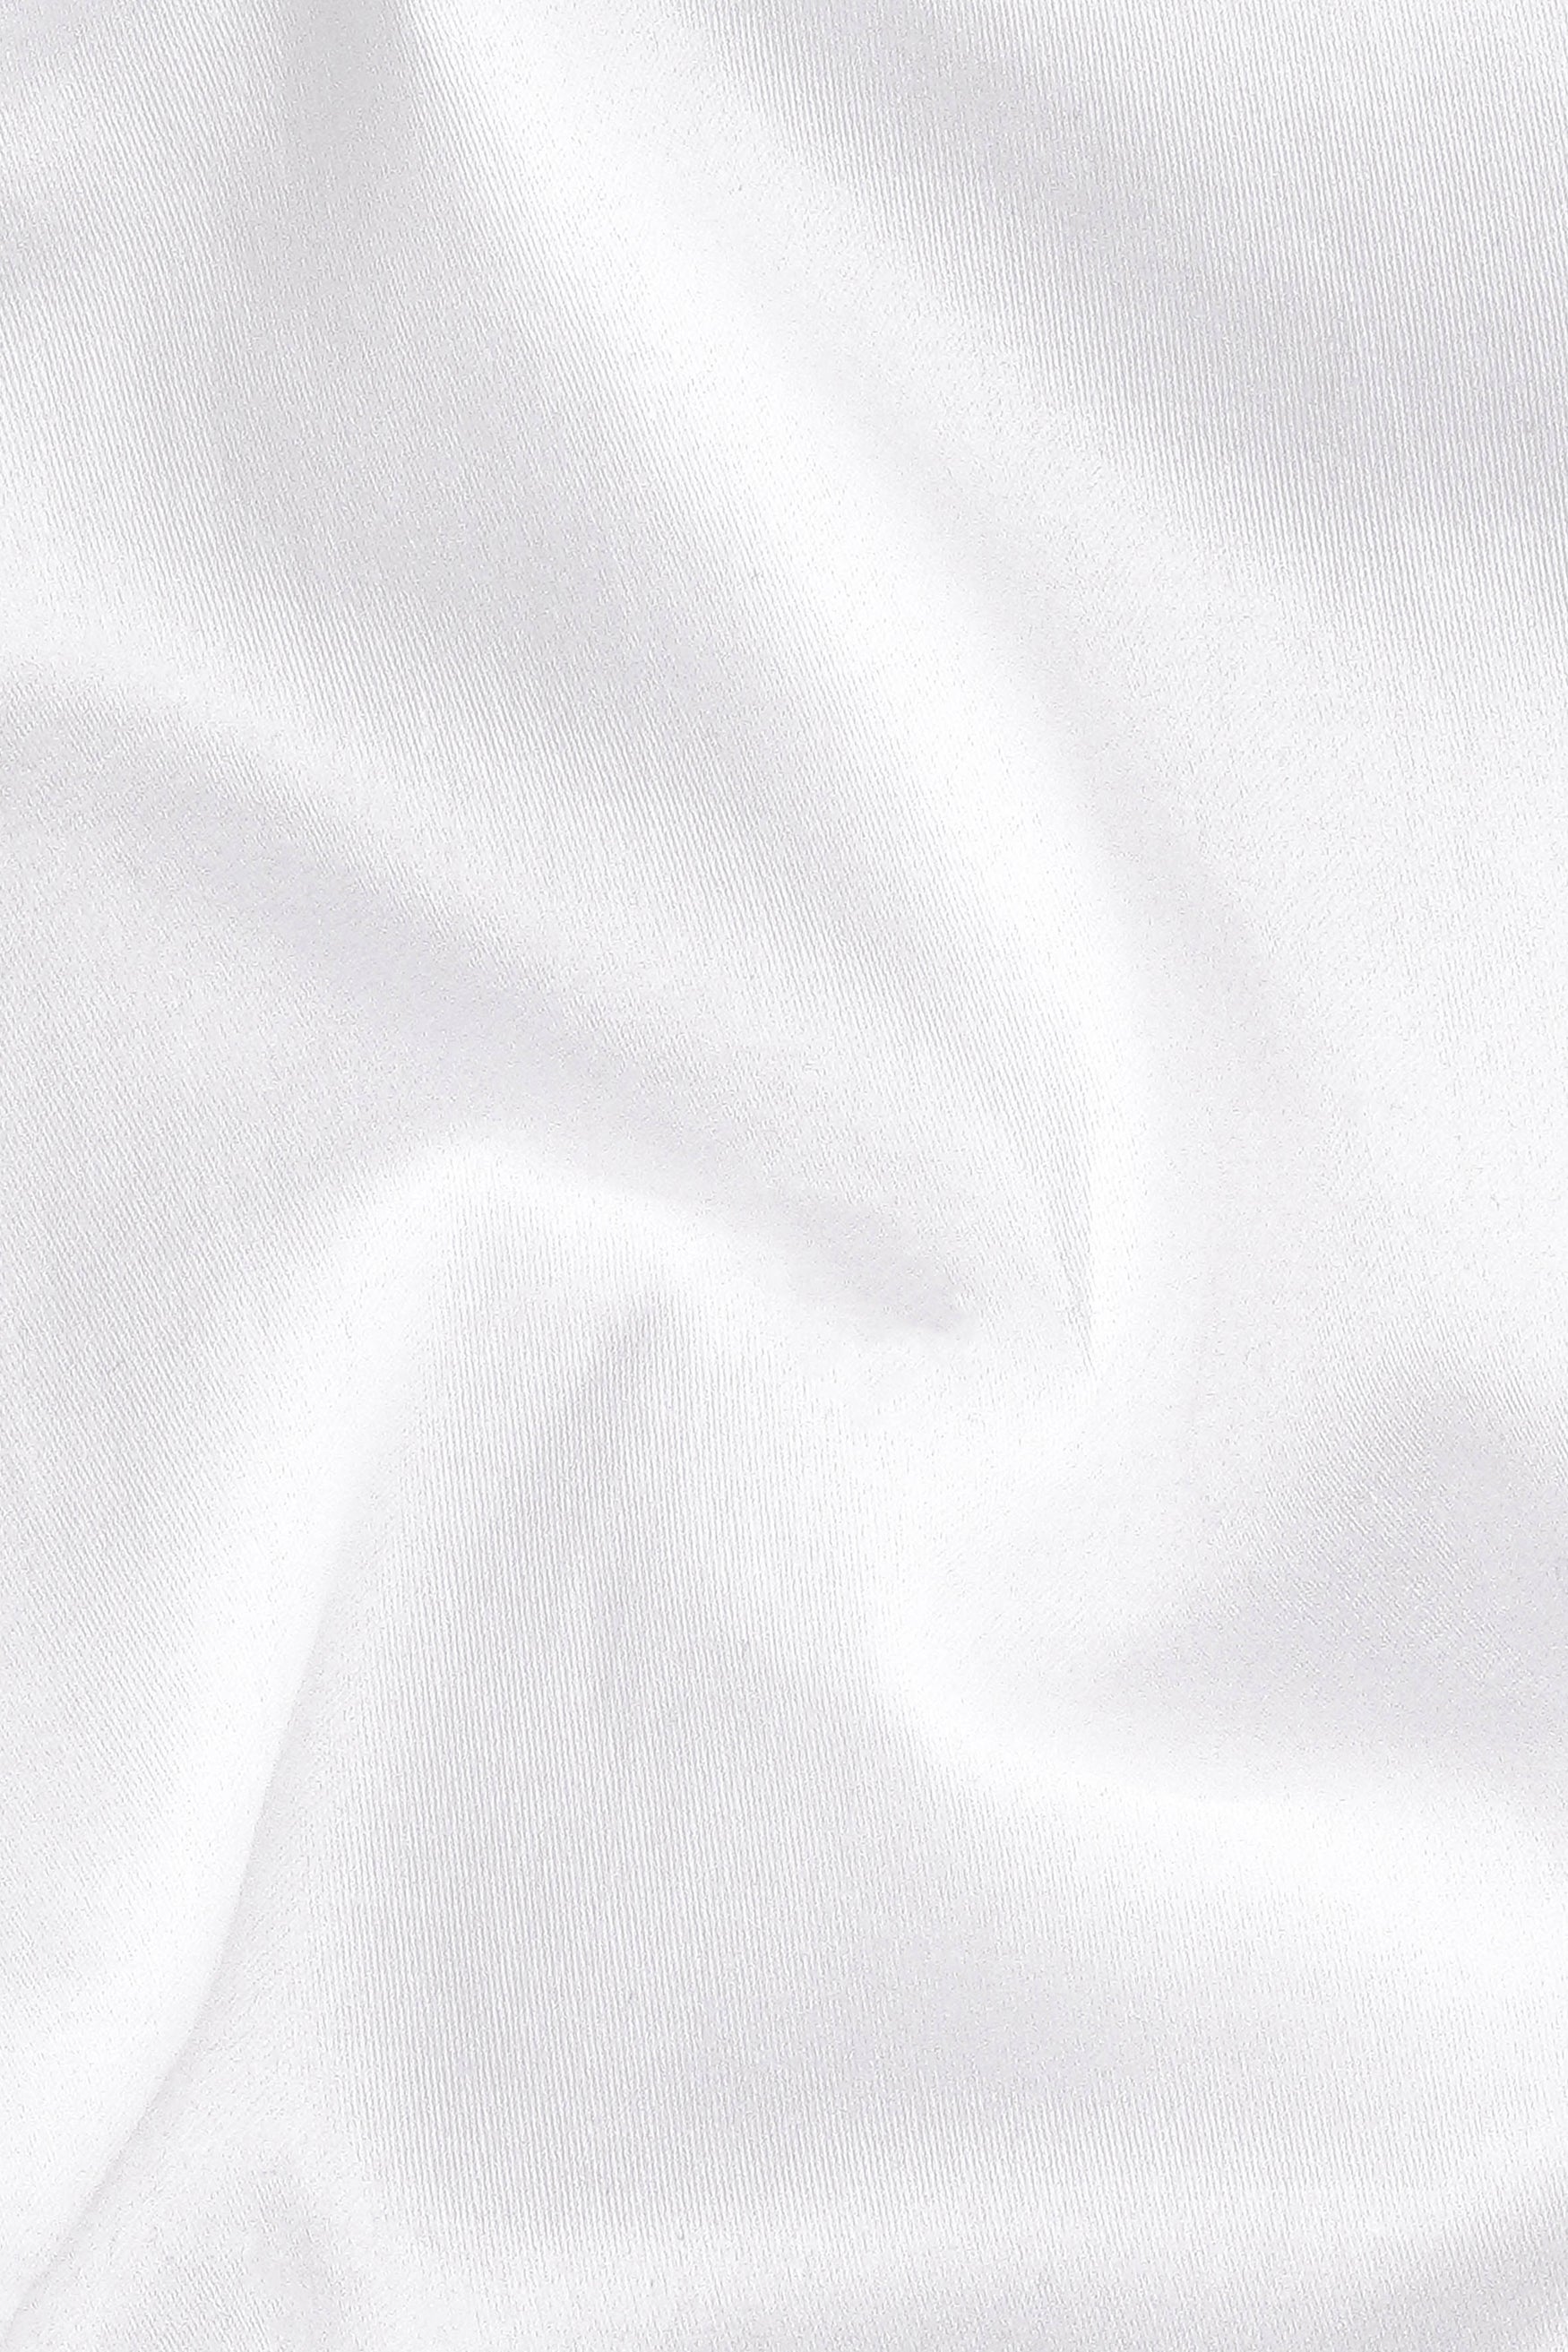 Bright White Subtle Sheen Super Soft Premium Cotton Kurta